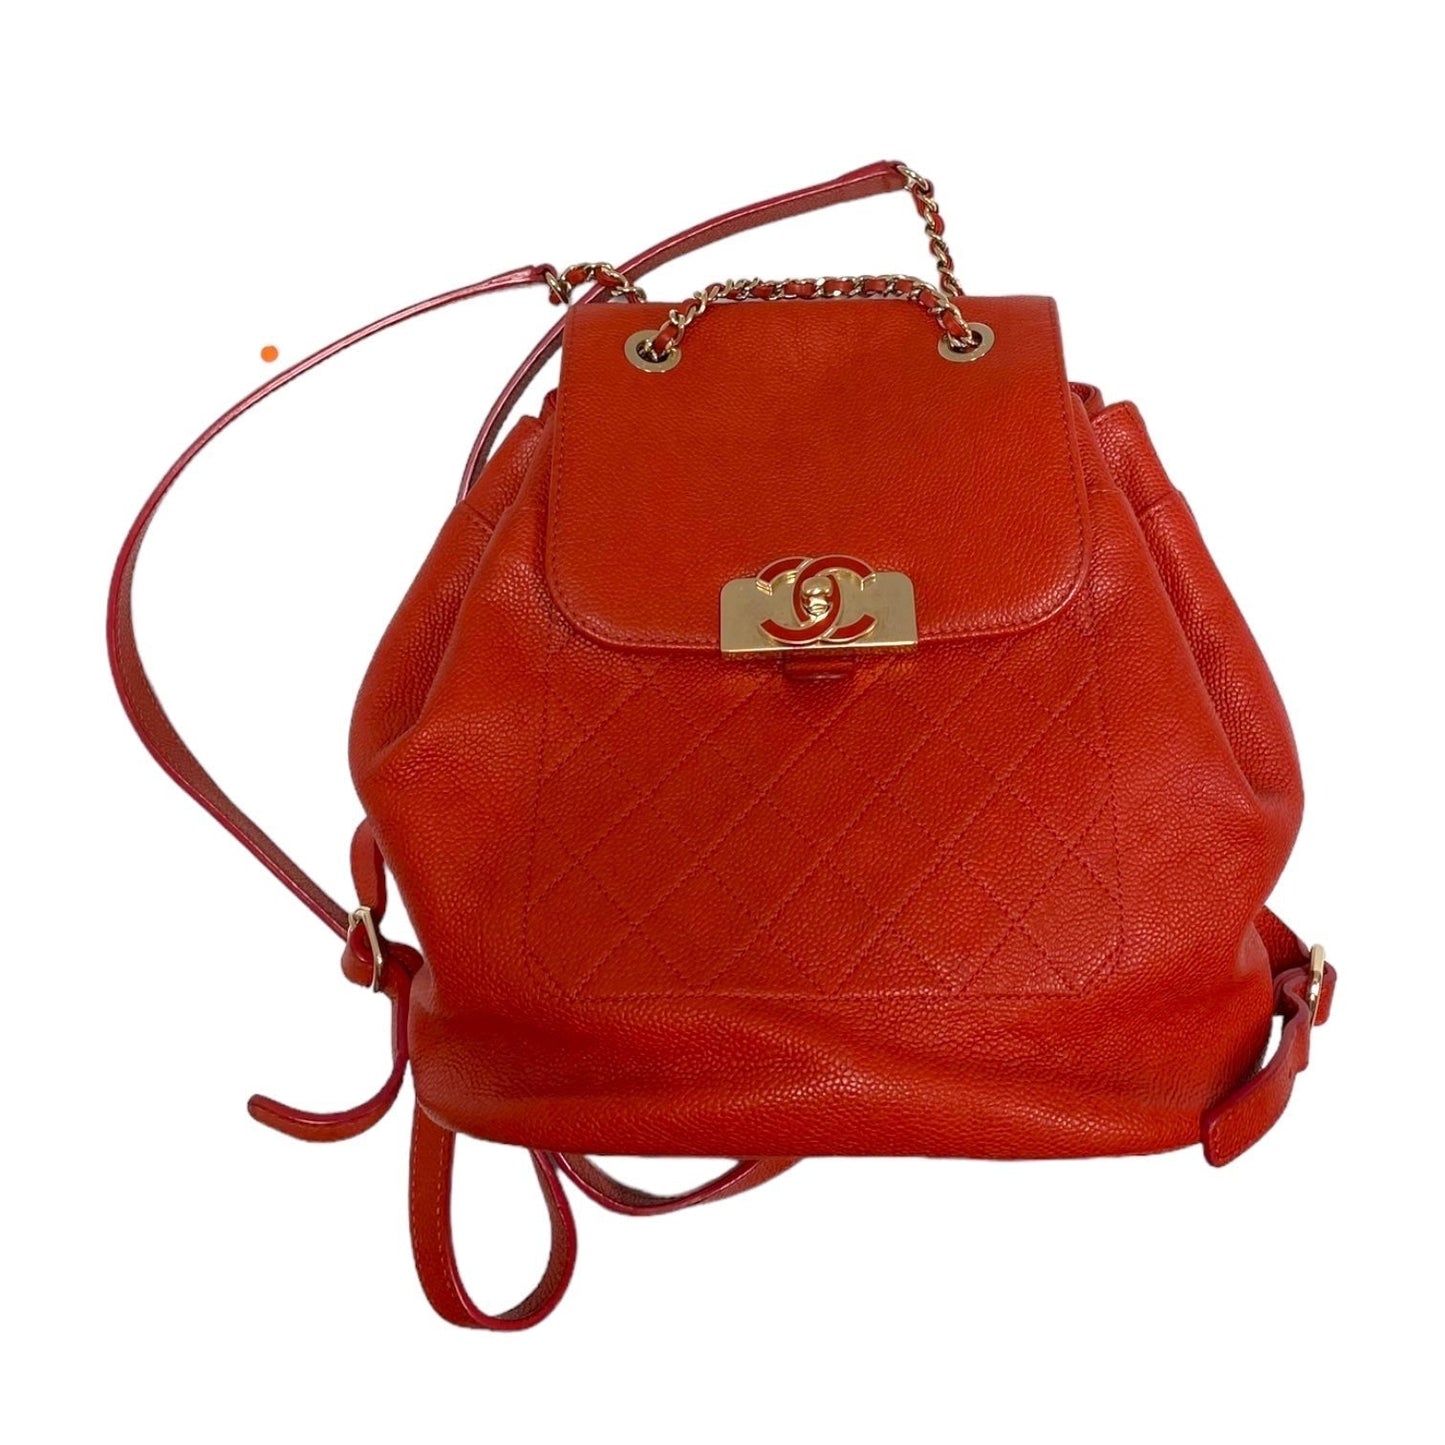 Backpack Luxury Designer Chanel, Size Medium